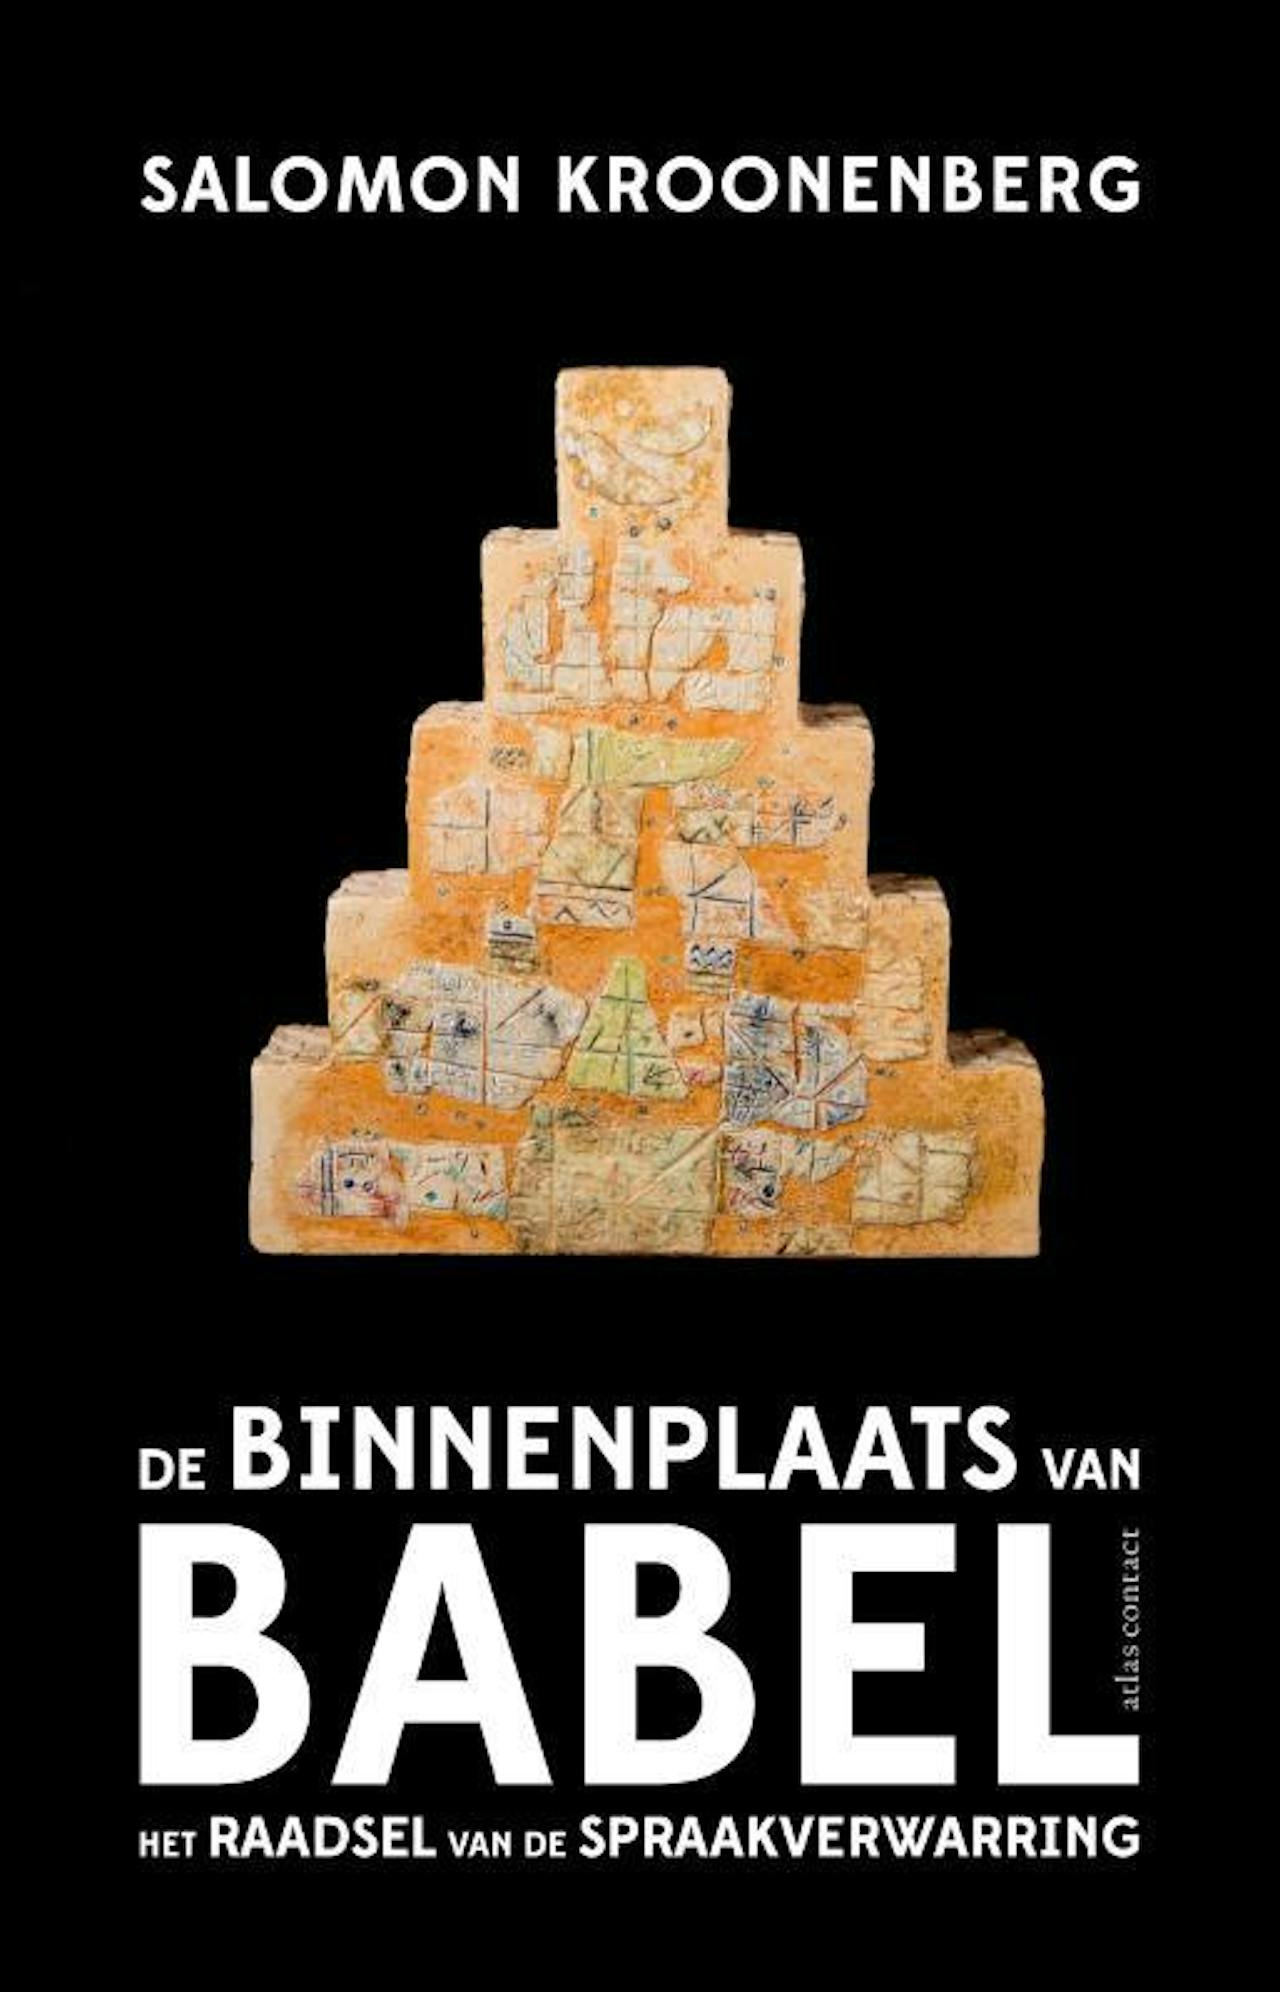 De cover van het boek De binnenplaats van Babel.